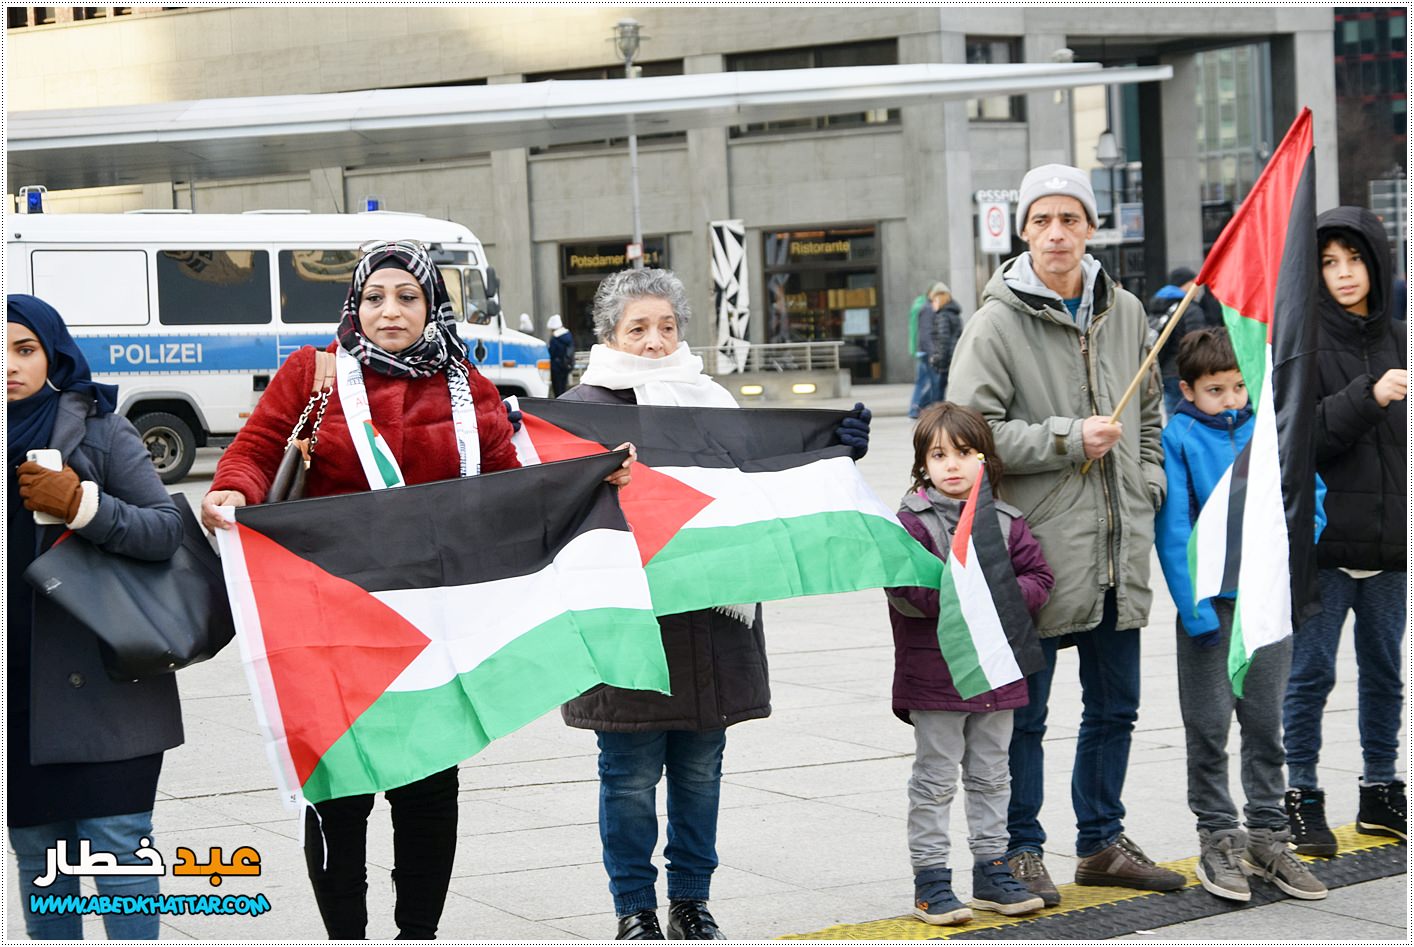  وقفة تضامن ودعم وتأييد للأسرى الفلسطينيين